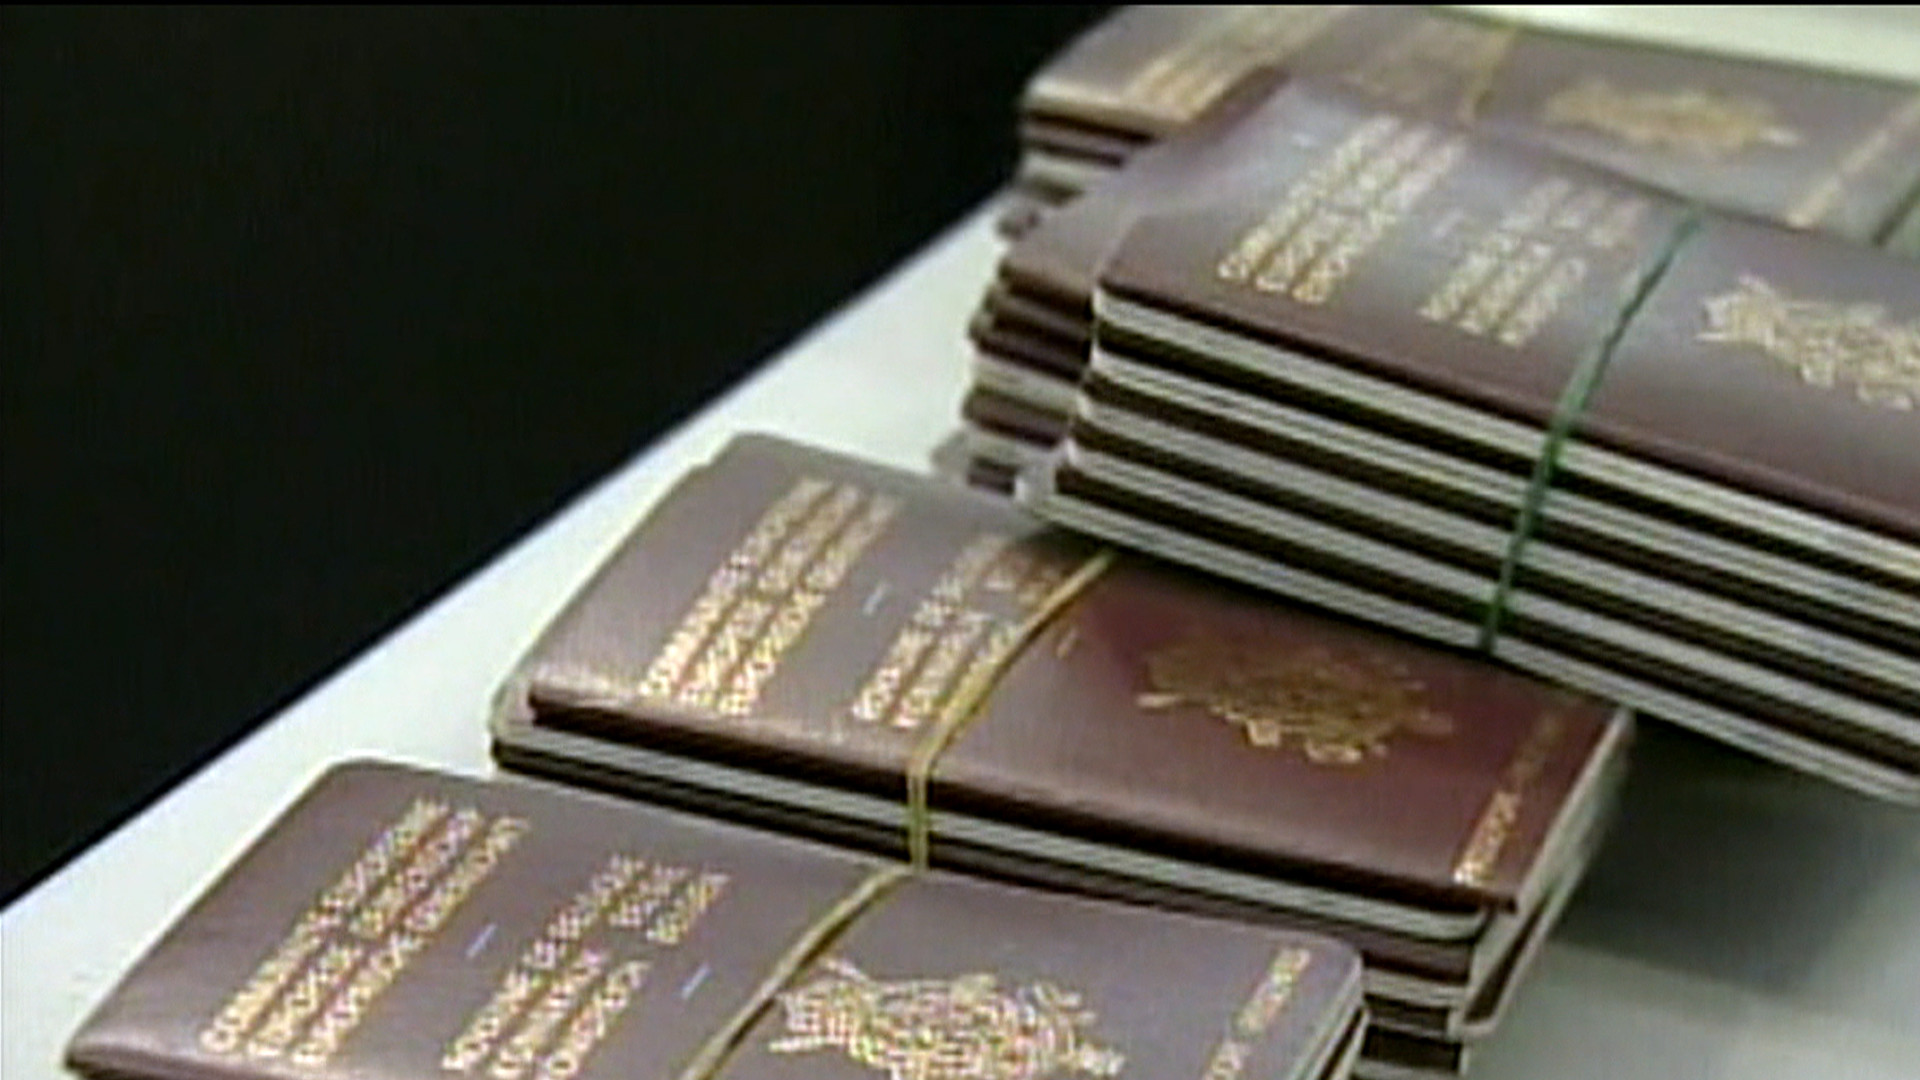 Σουηδός προσπάθησε να περάσει από το Ελευθέριος Βενιζέλος 31 διαβατήρια μέσα σε φούρνο μικροκυμάτων!